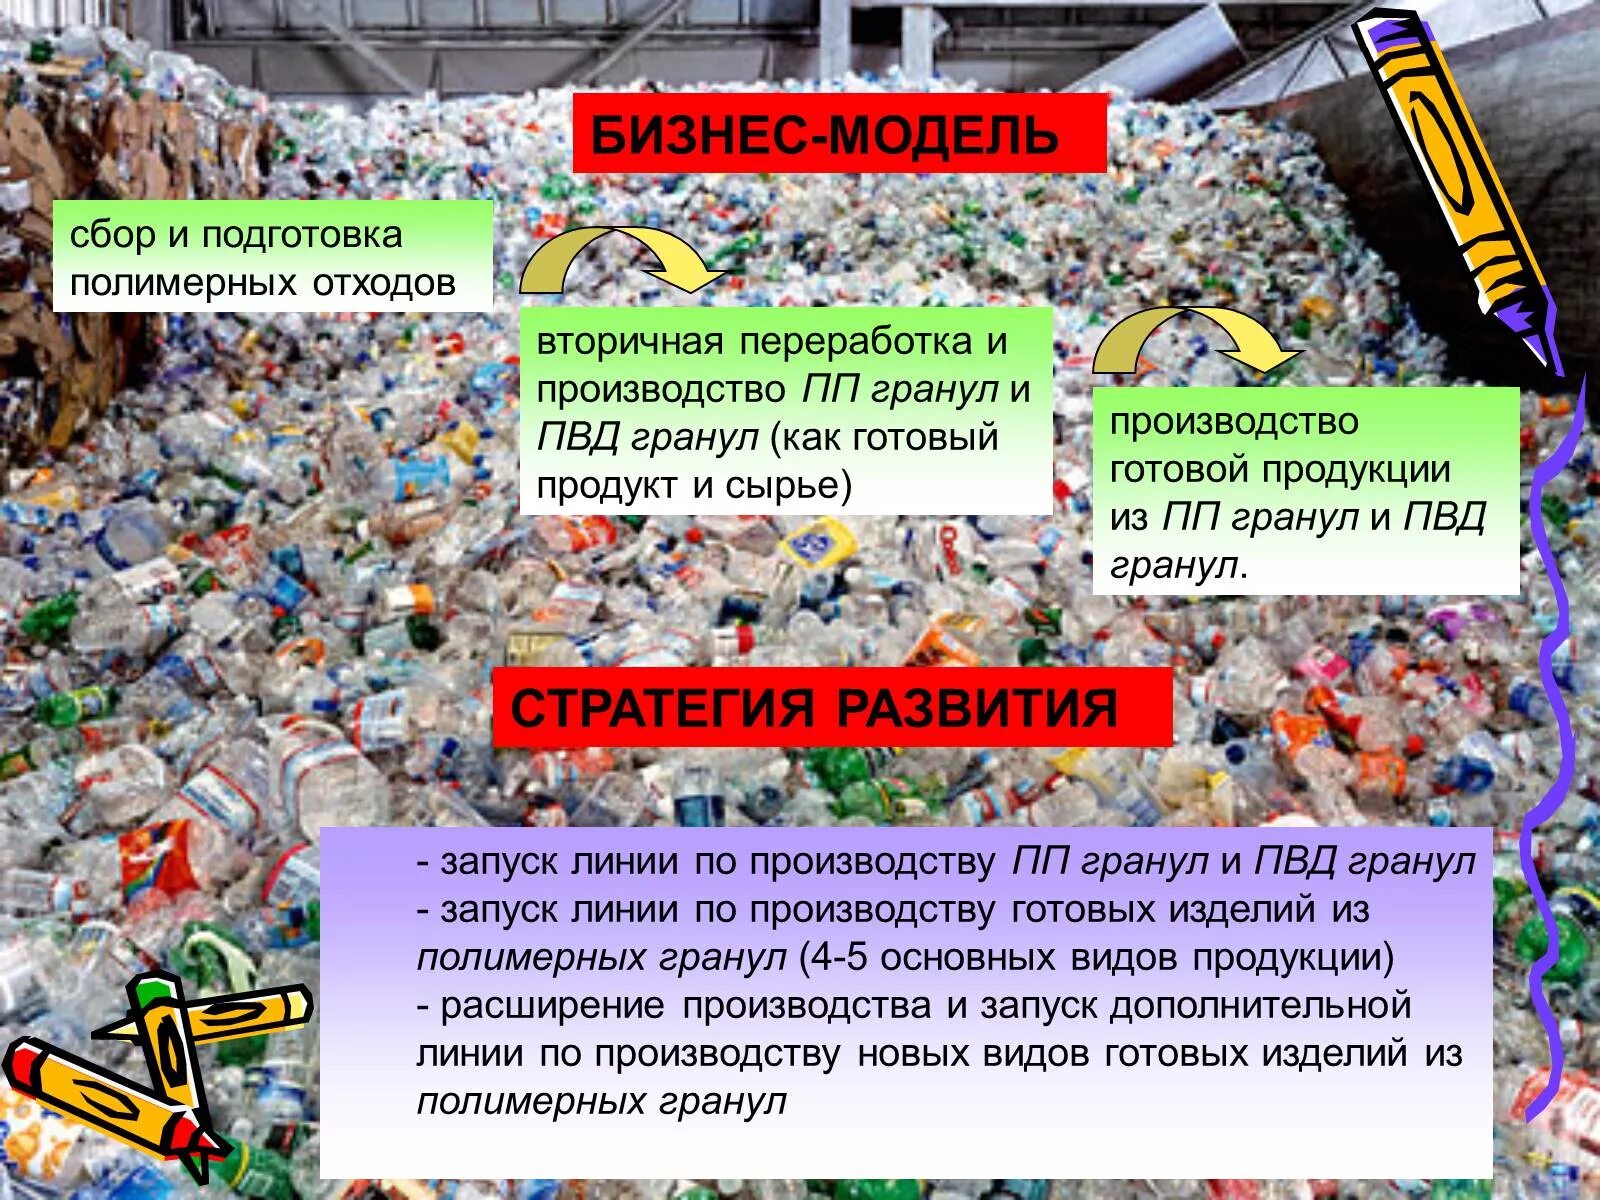 Деятельность с отходами. Презентация на тему отходы. Проект на тему утилизация отходов.